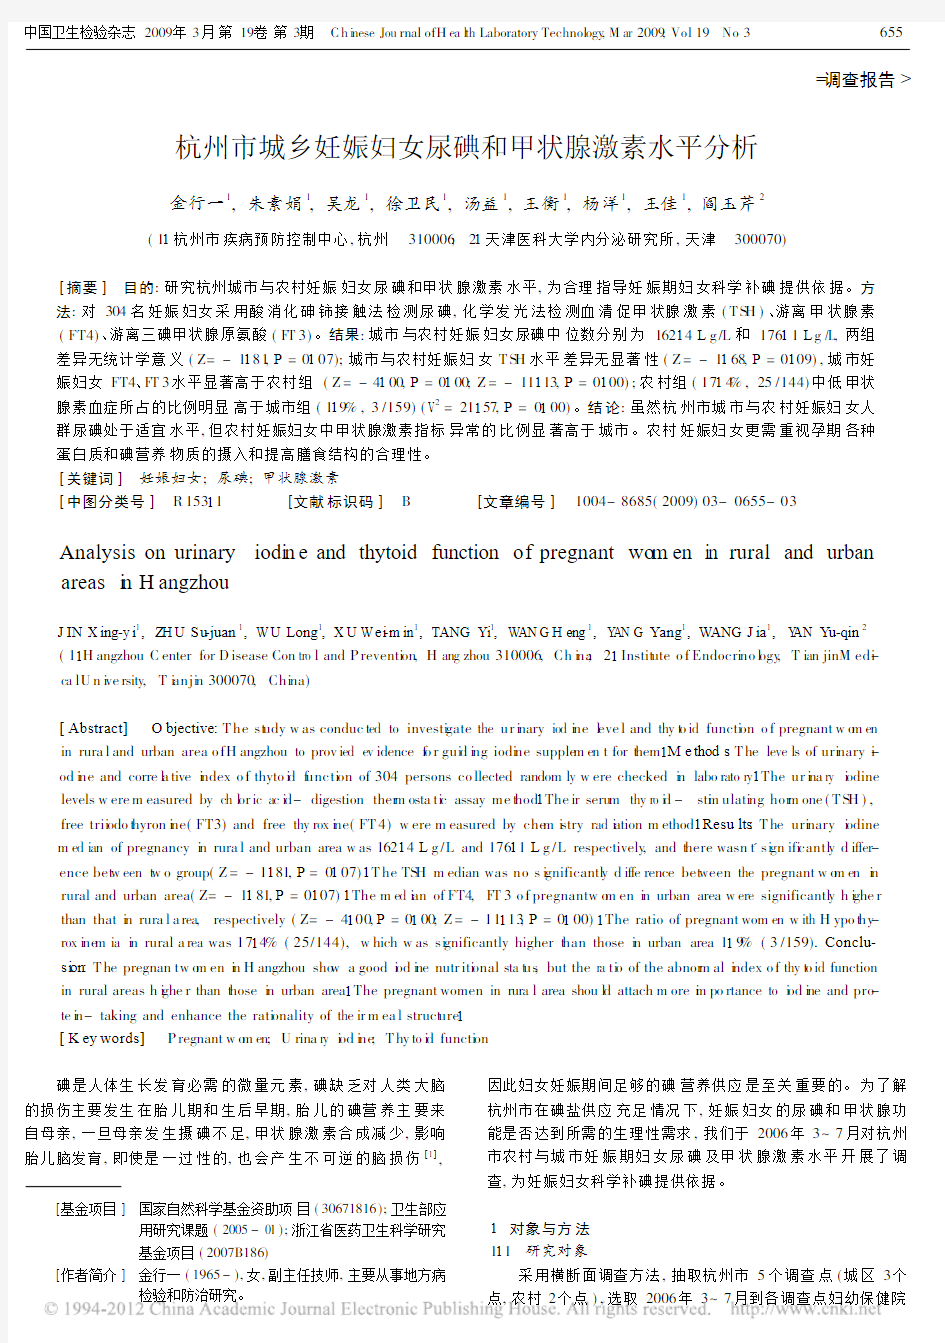 杭州市城乡妊娠妇女尿碘和甲状腺激素水平分析